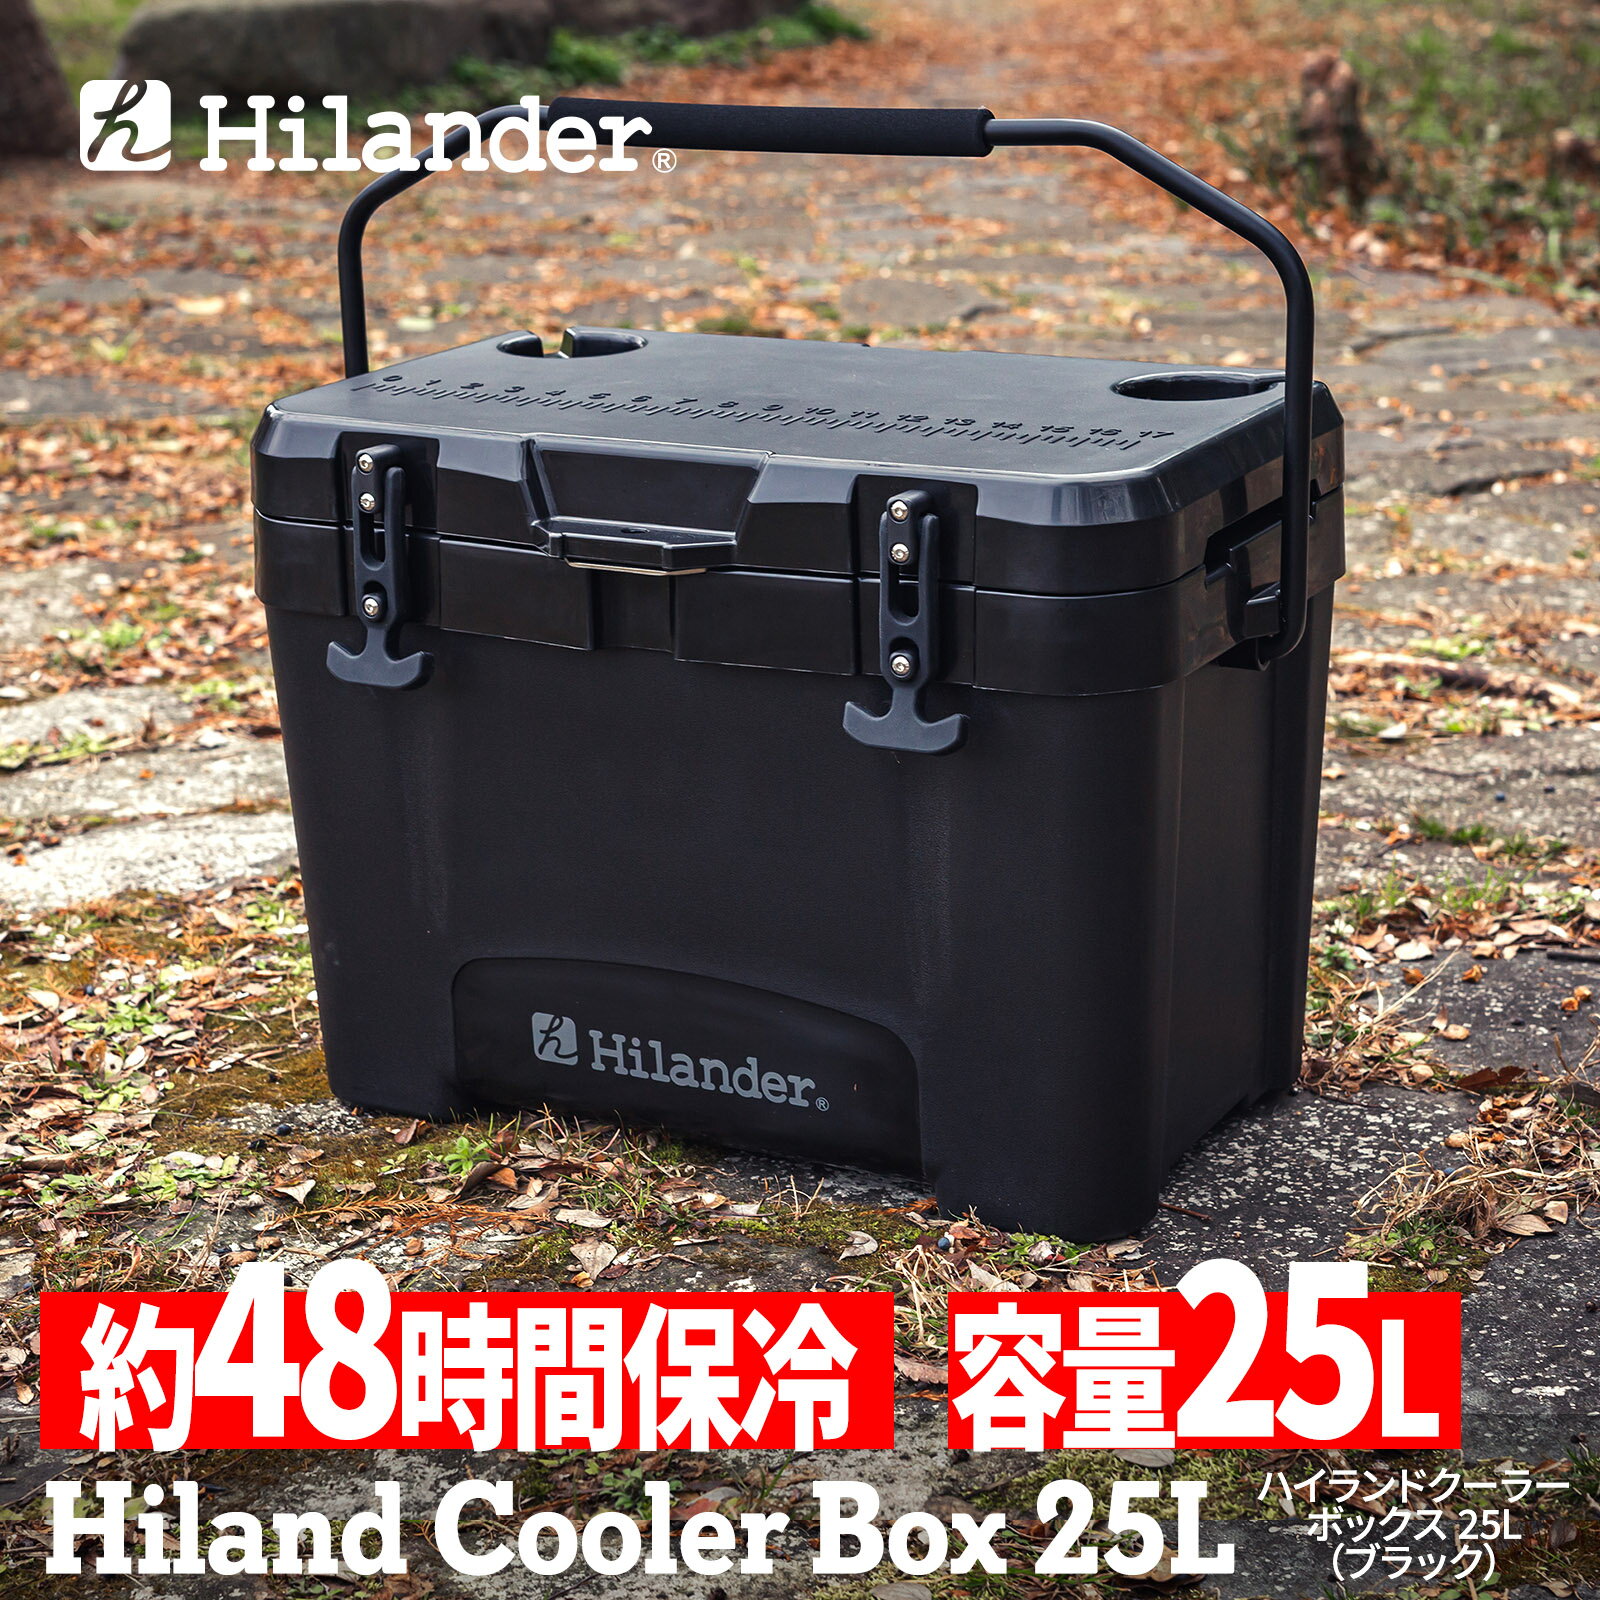 【ポイントアップ中！5/20まで】 Hilander(ハイランダー) 【5月下旬発送分】ハイランドクーラーボックス 25L クーラーBOX ハード【1年保証】 ブラック HCT-054